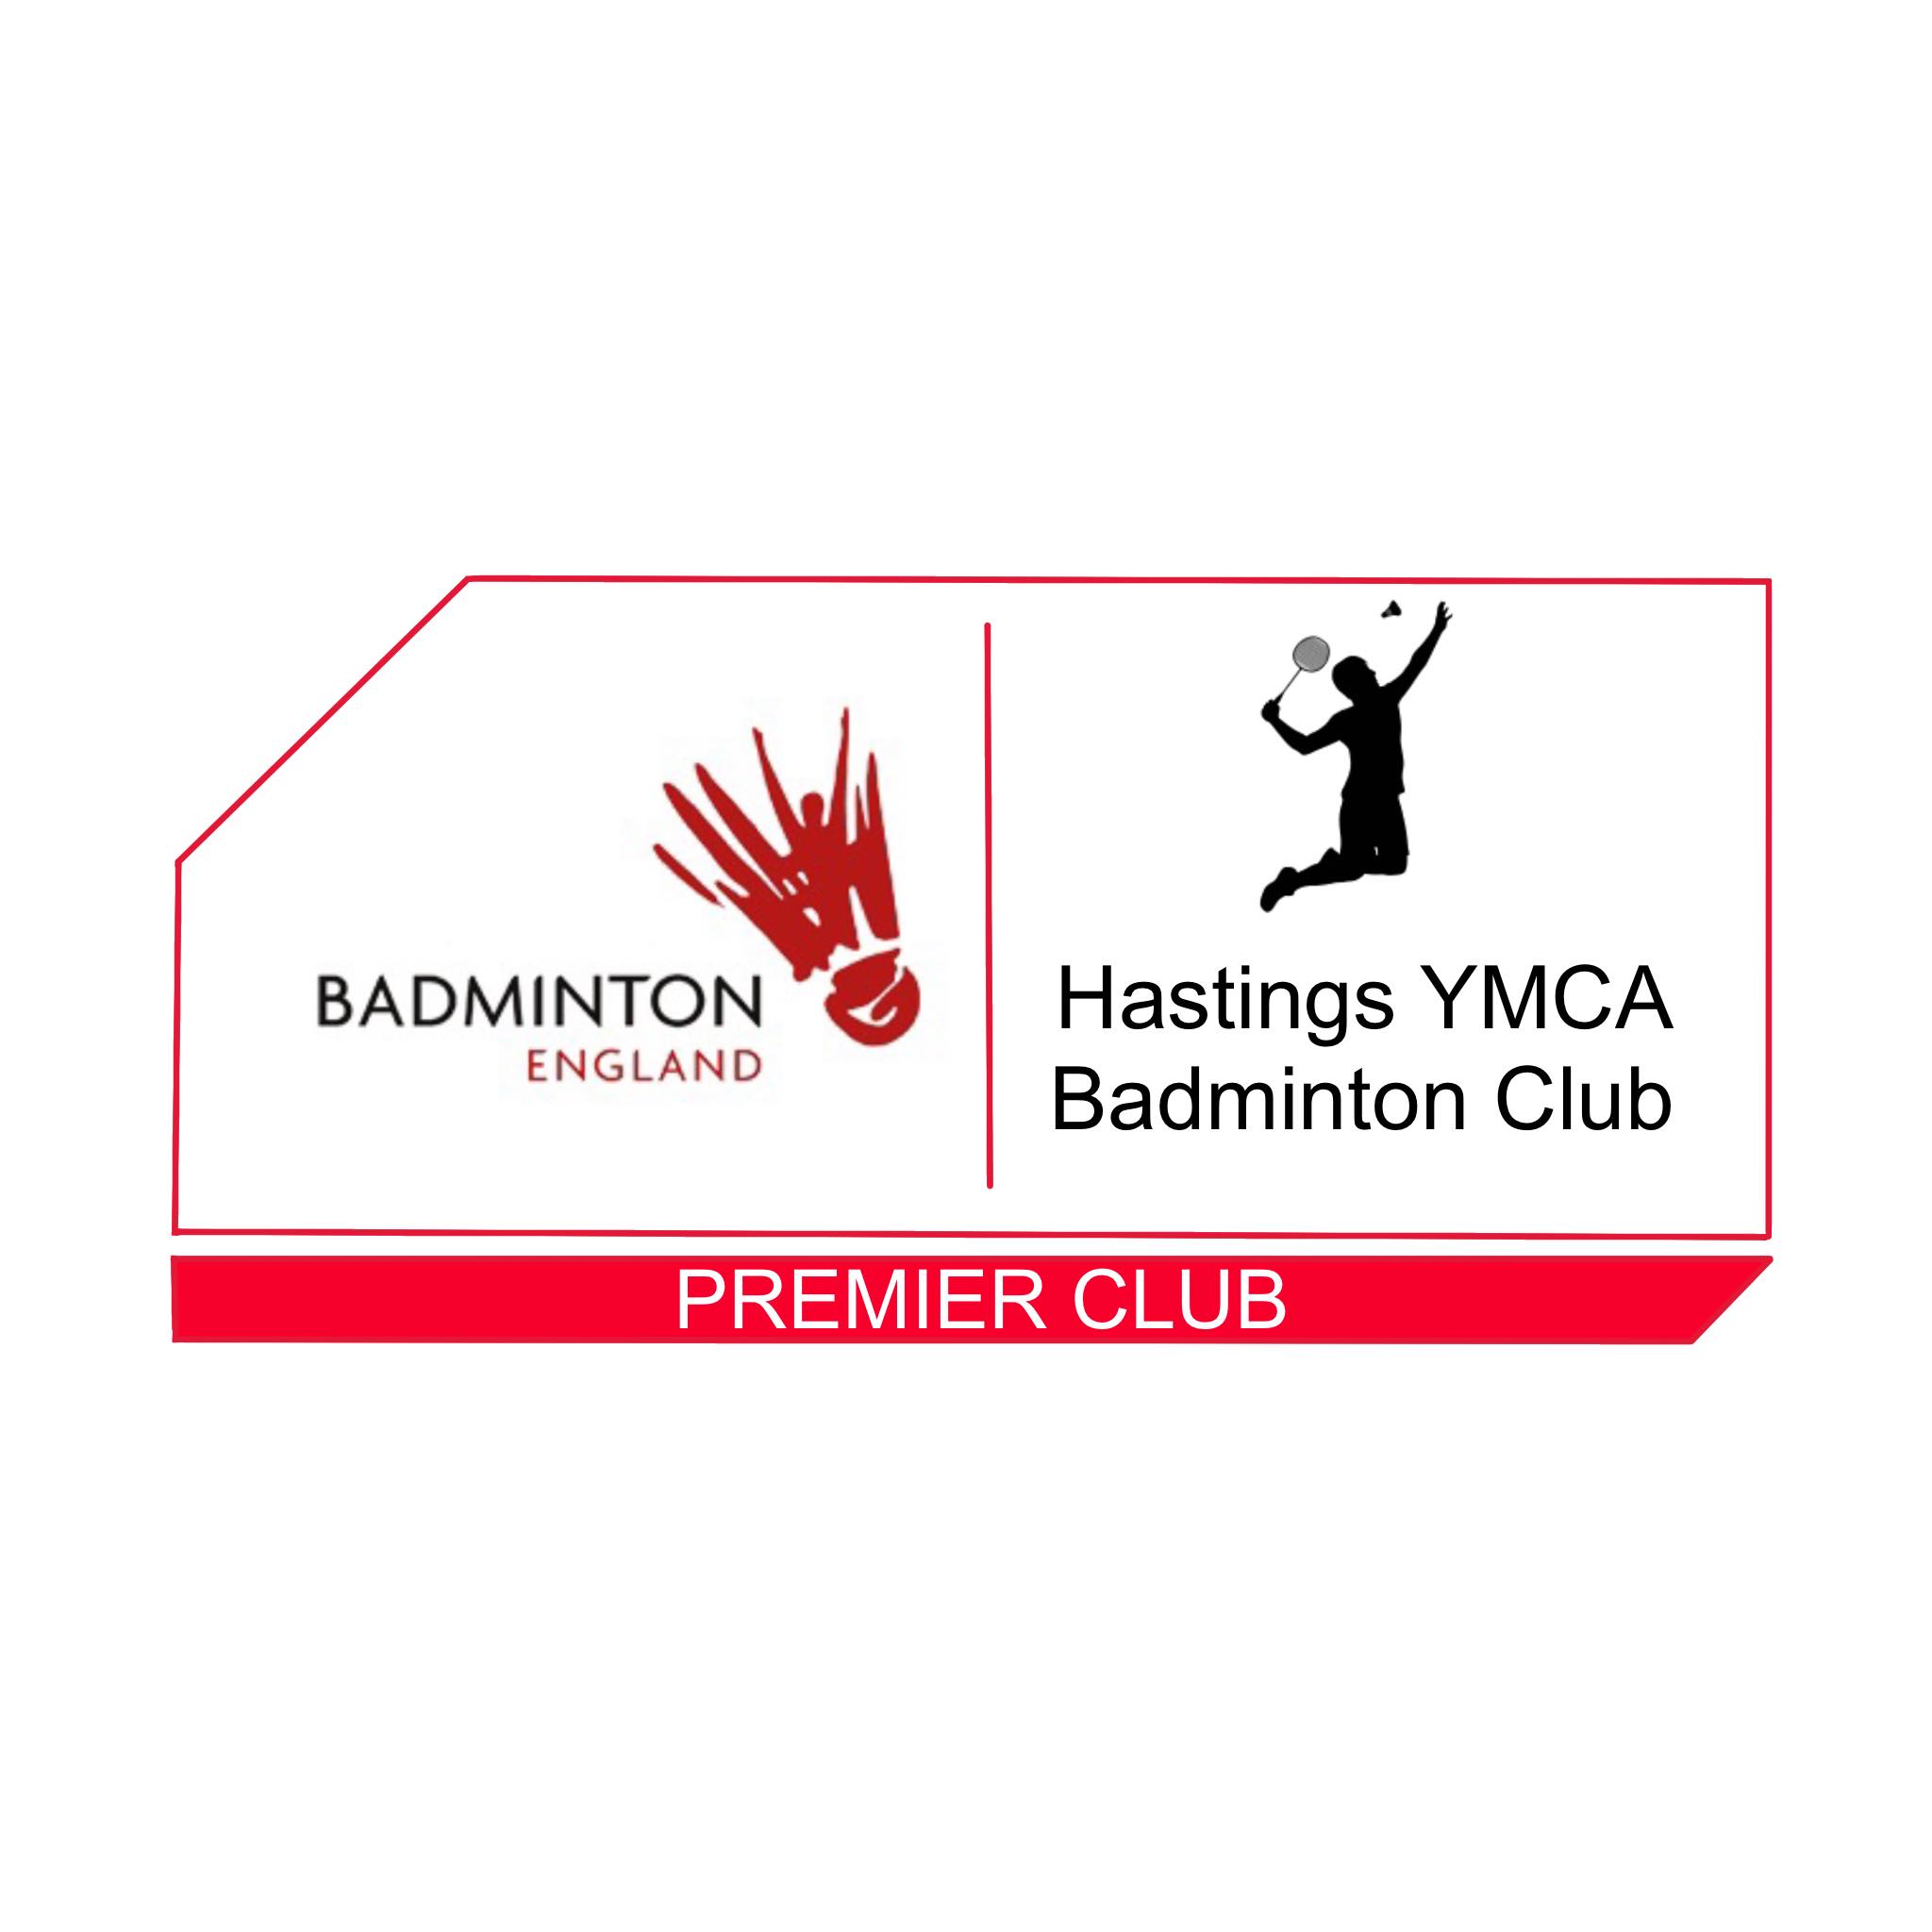 Hastings YMCA Badminton Club